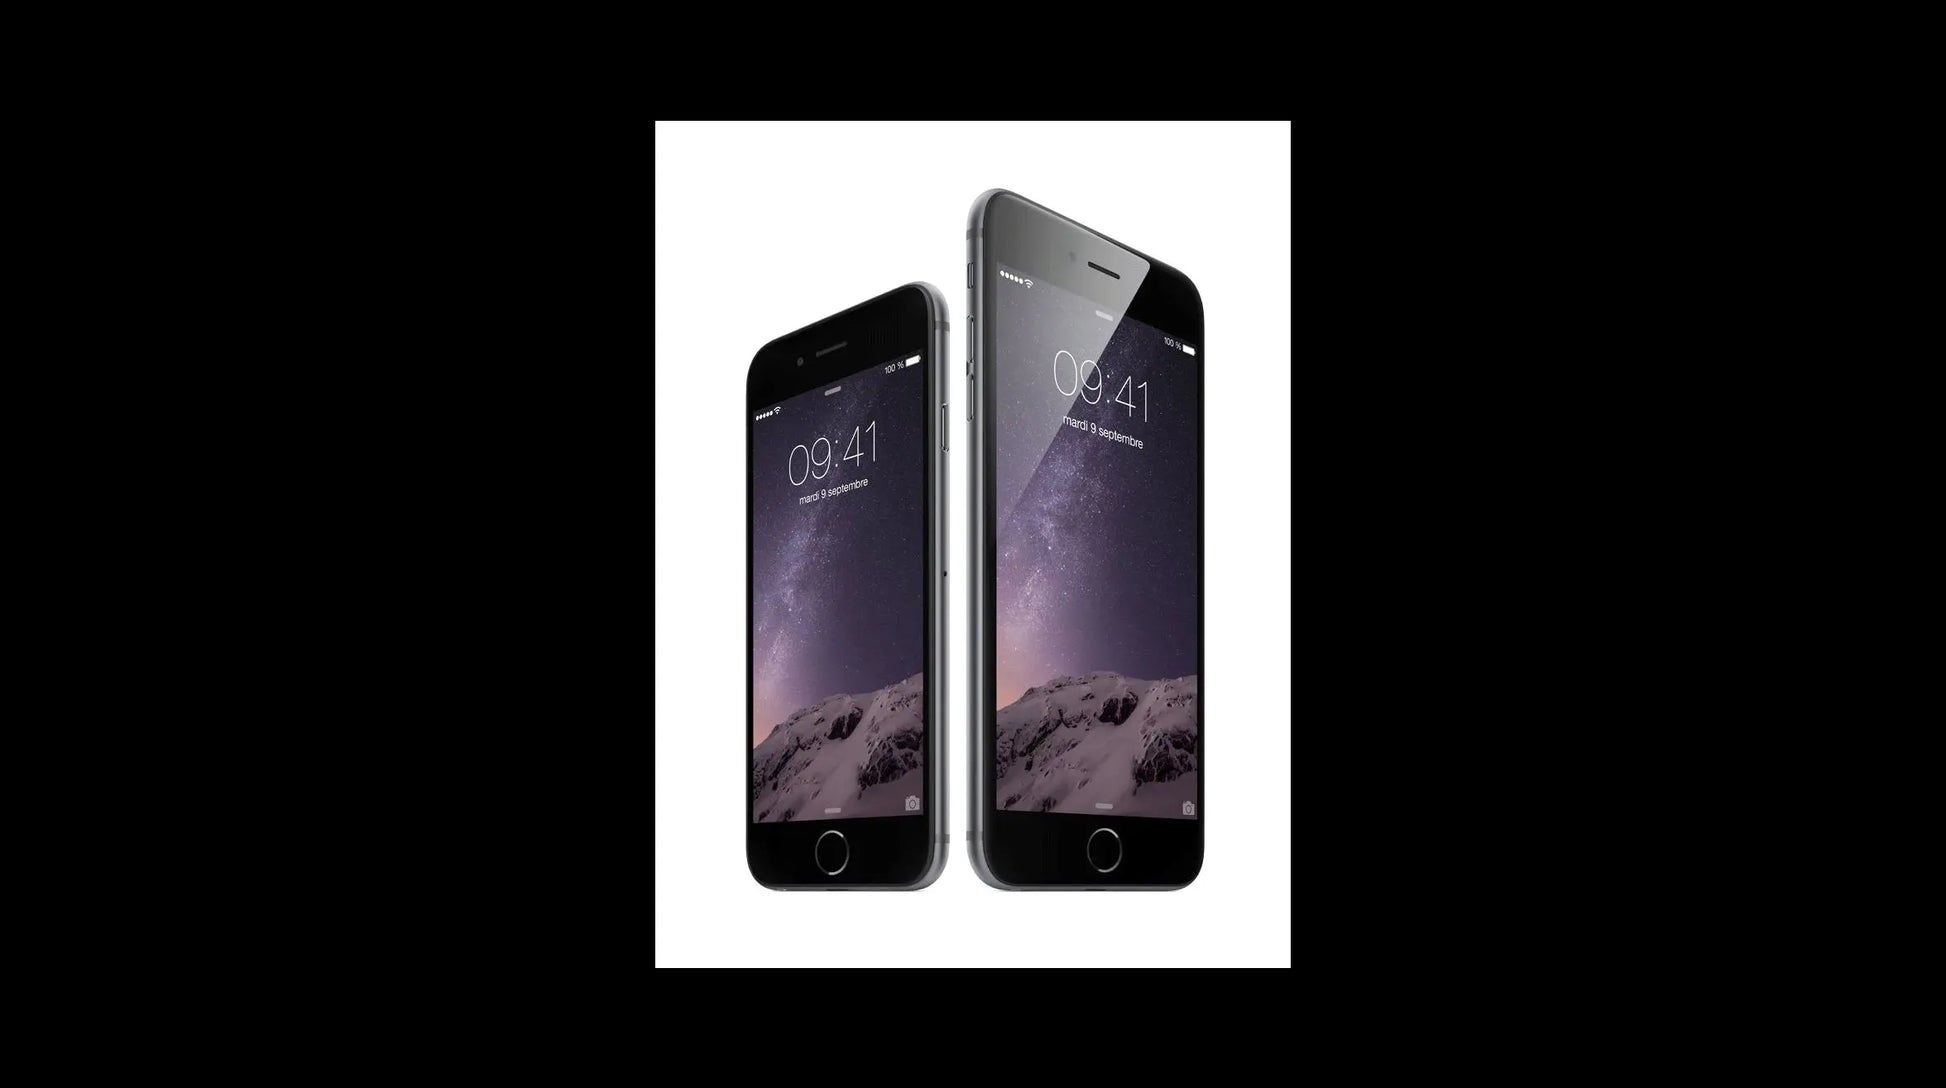 Pourquoi Apple agrandit-elle l'écran de l'iPhone 6 